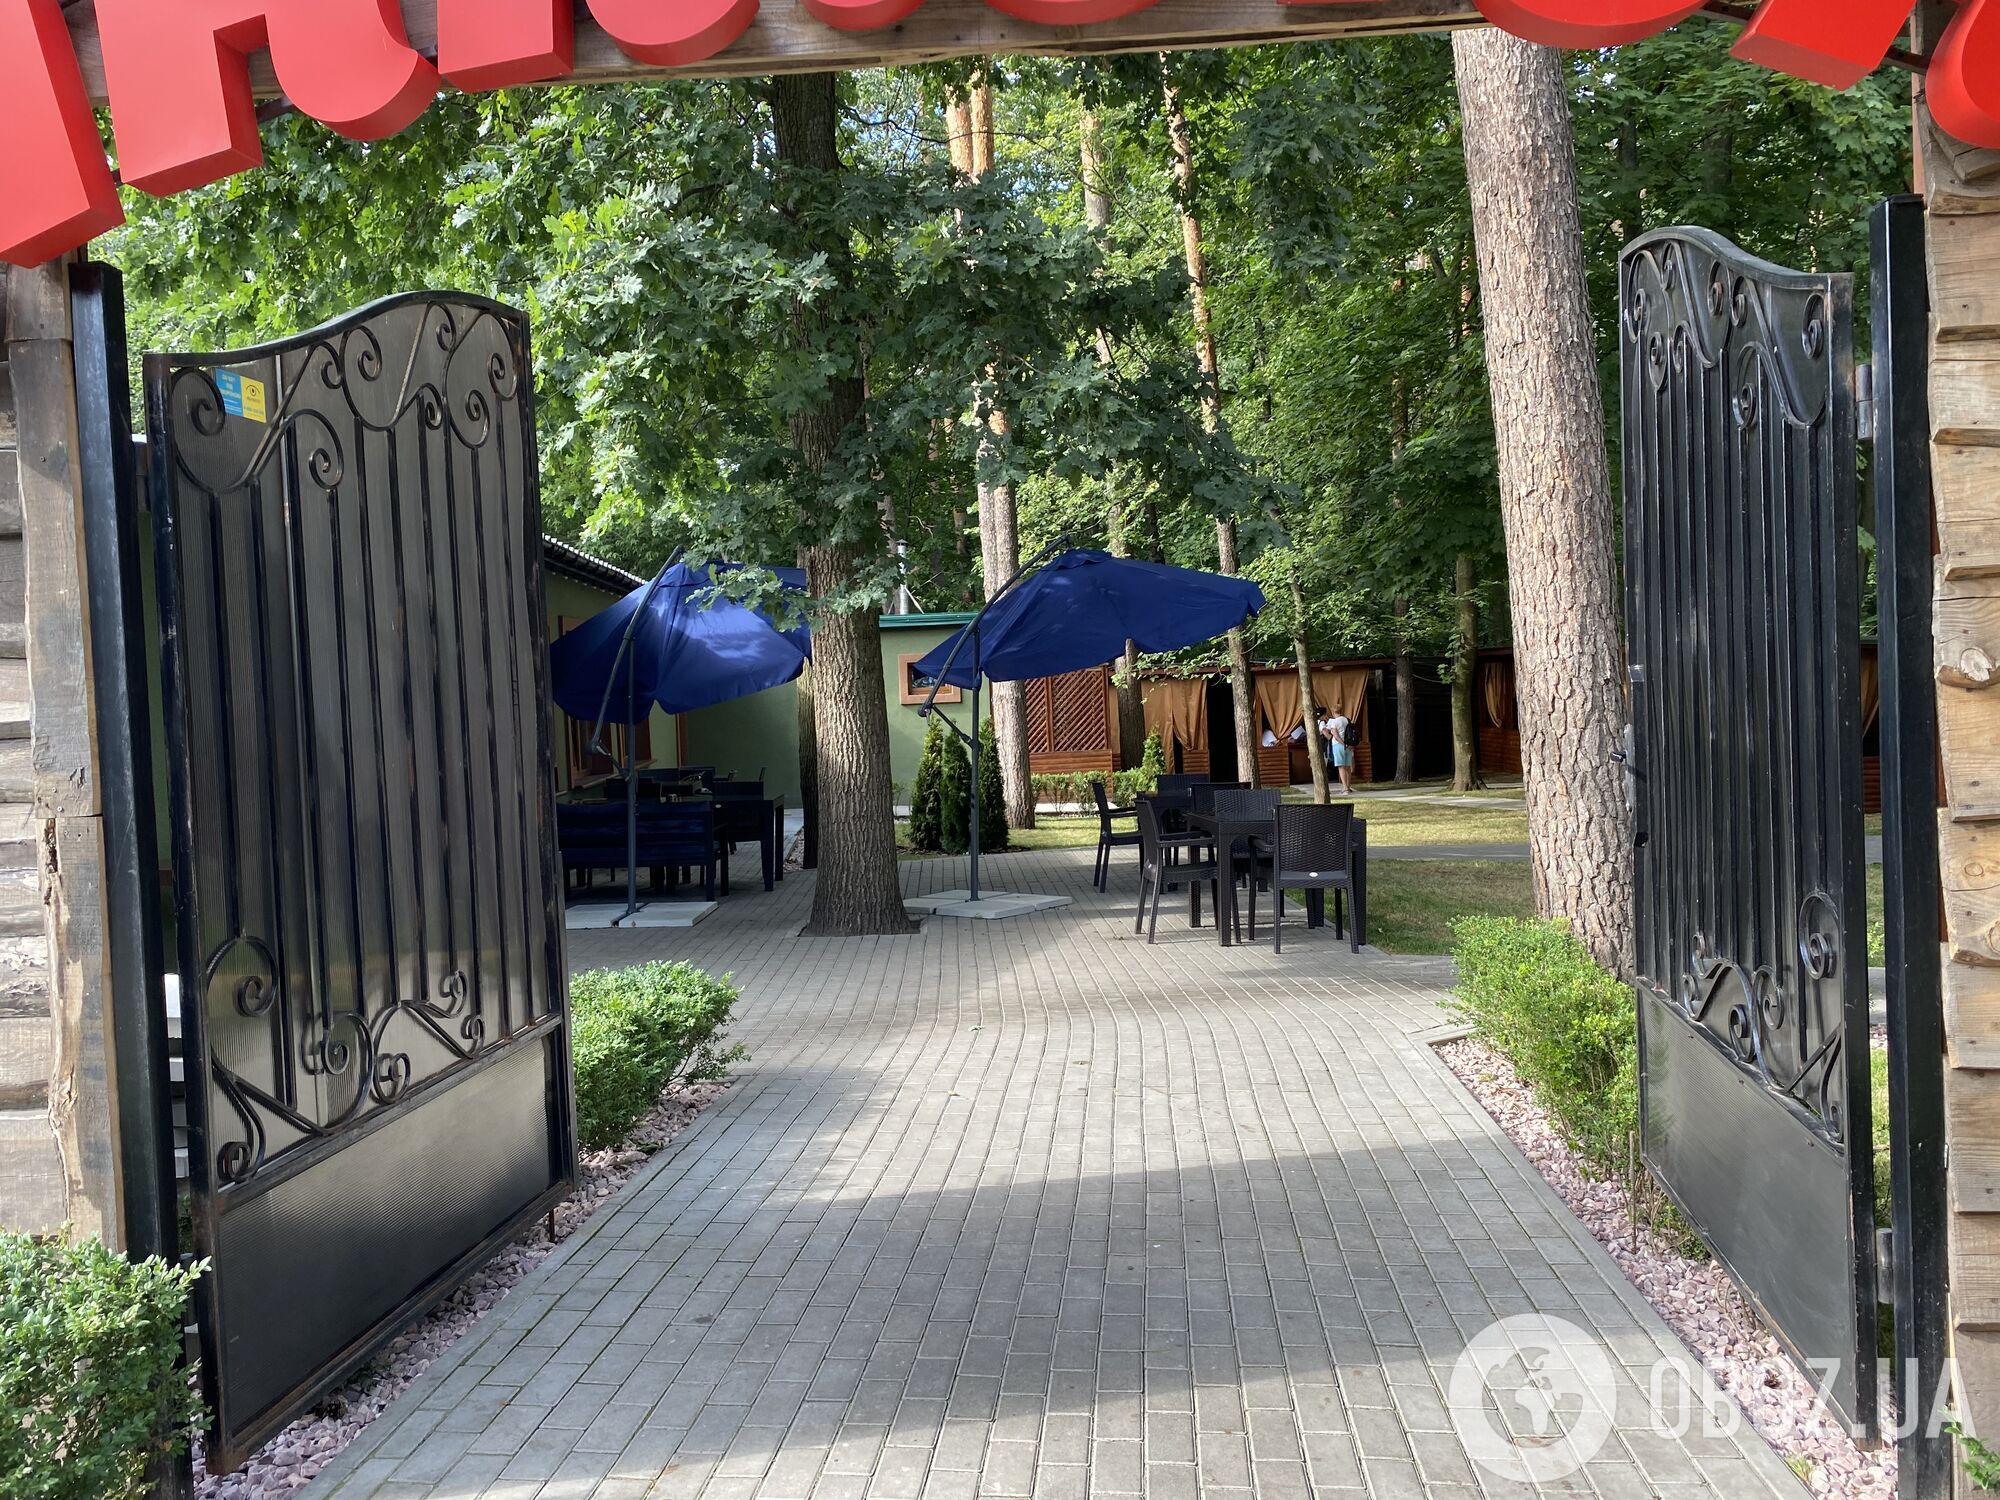 Новий ресторан, більше парковок і будівництво в садах: поки триває суд, ексміліціонер продовжує свій бізнес у парку "Голосіївський"